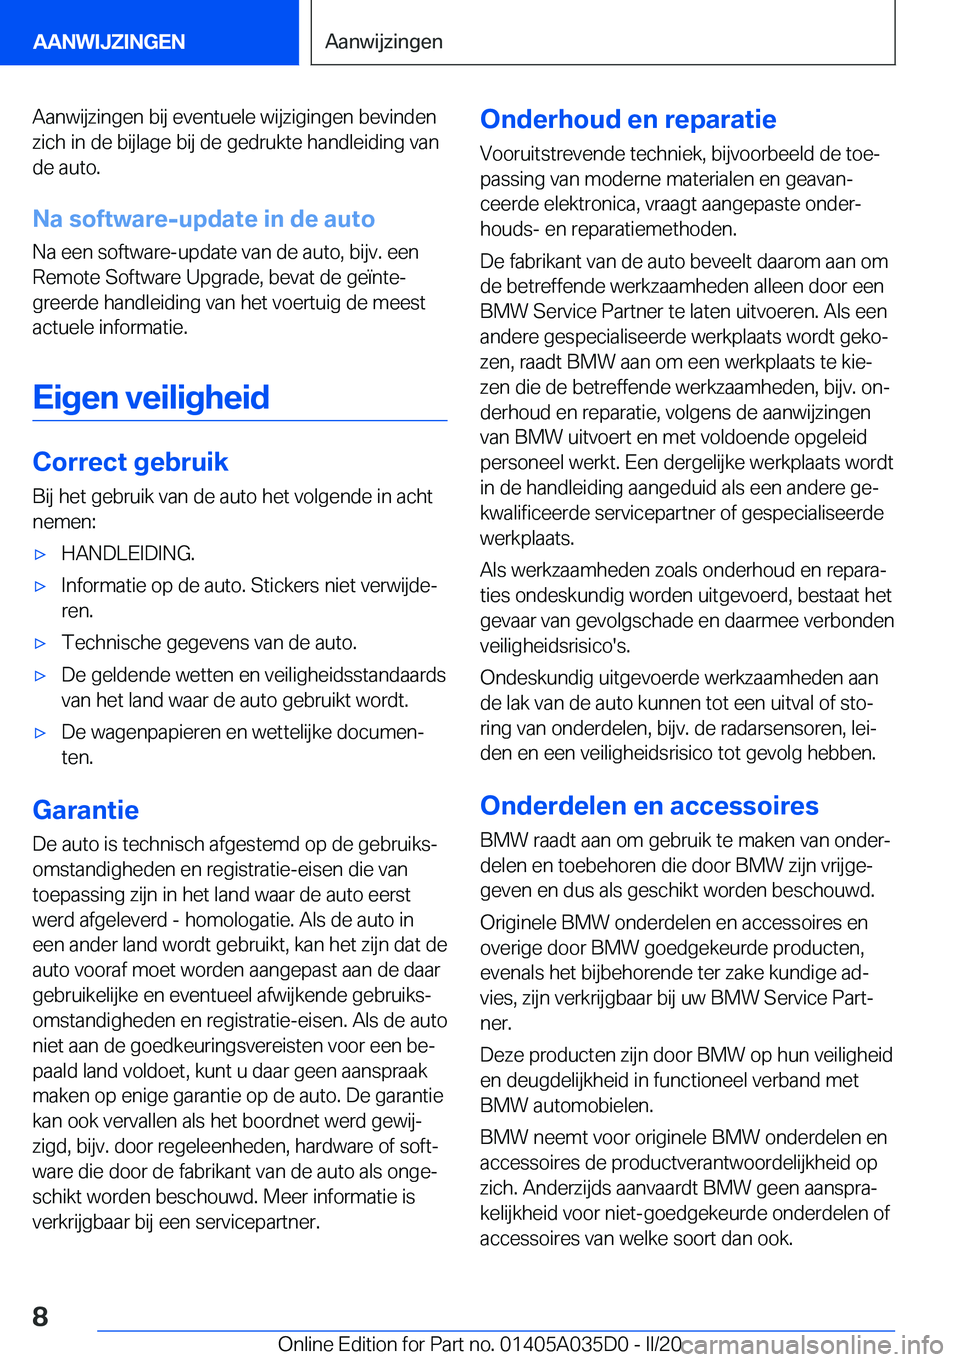 BMW X4 2020  Instructieboekjes (in Dutch) �A�a�n�w�i�j�z�i�n�g�e�n��b�i�j��e�v�e�n�t�u�e�l�e��w�i�j�z�i�g�i�n�g�e�n��b�e�v�i�n�d�e�n�z�i�c�h��i�n��d�e��b�i�j�l�a�g�e��b�i�j��d�e��g�e�d�r�u�k�t�e��h�a�n�d�l�e�i�d�i�n�g��v�a�n
�d�e�